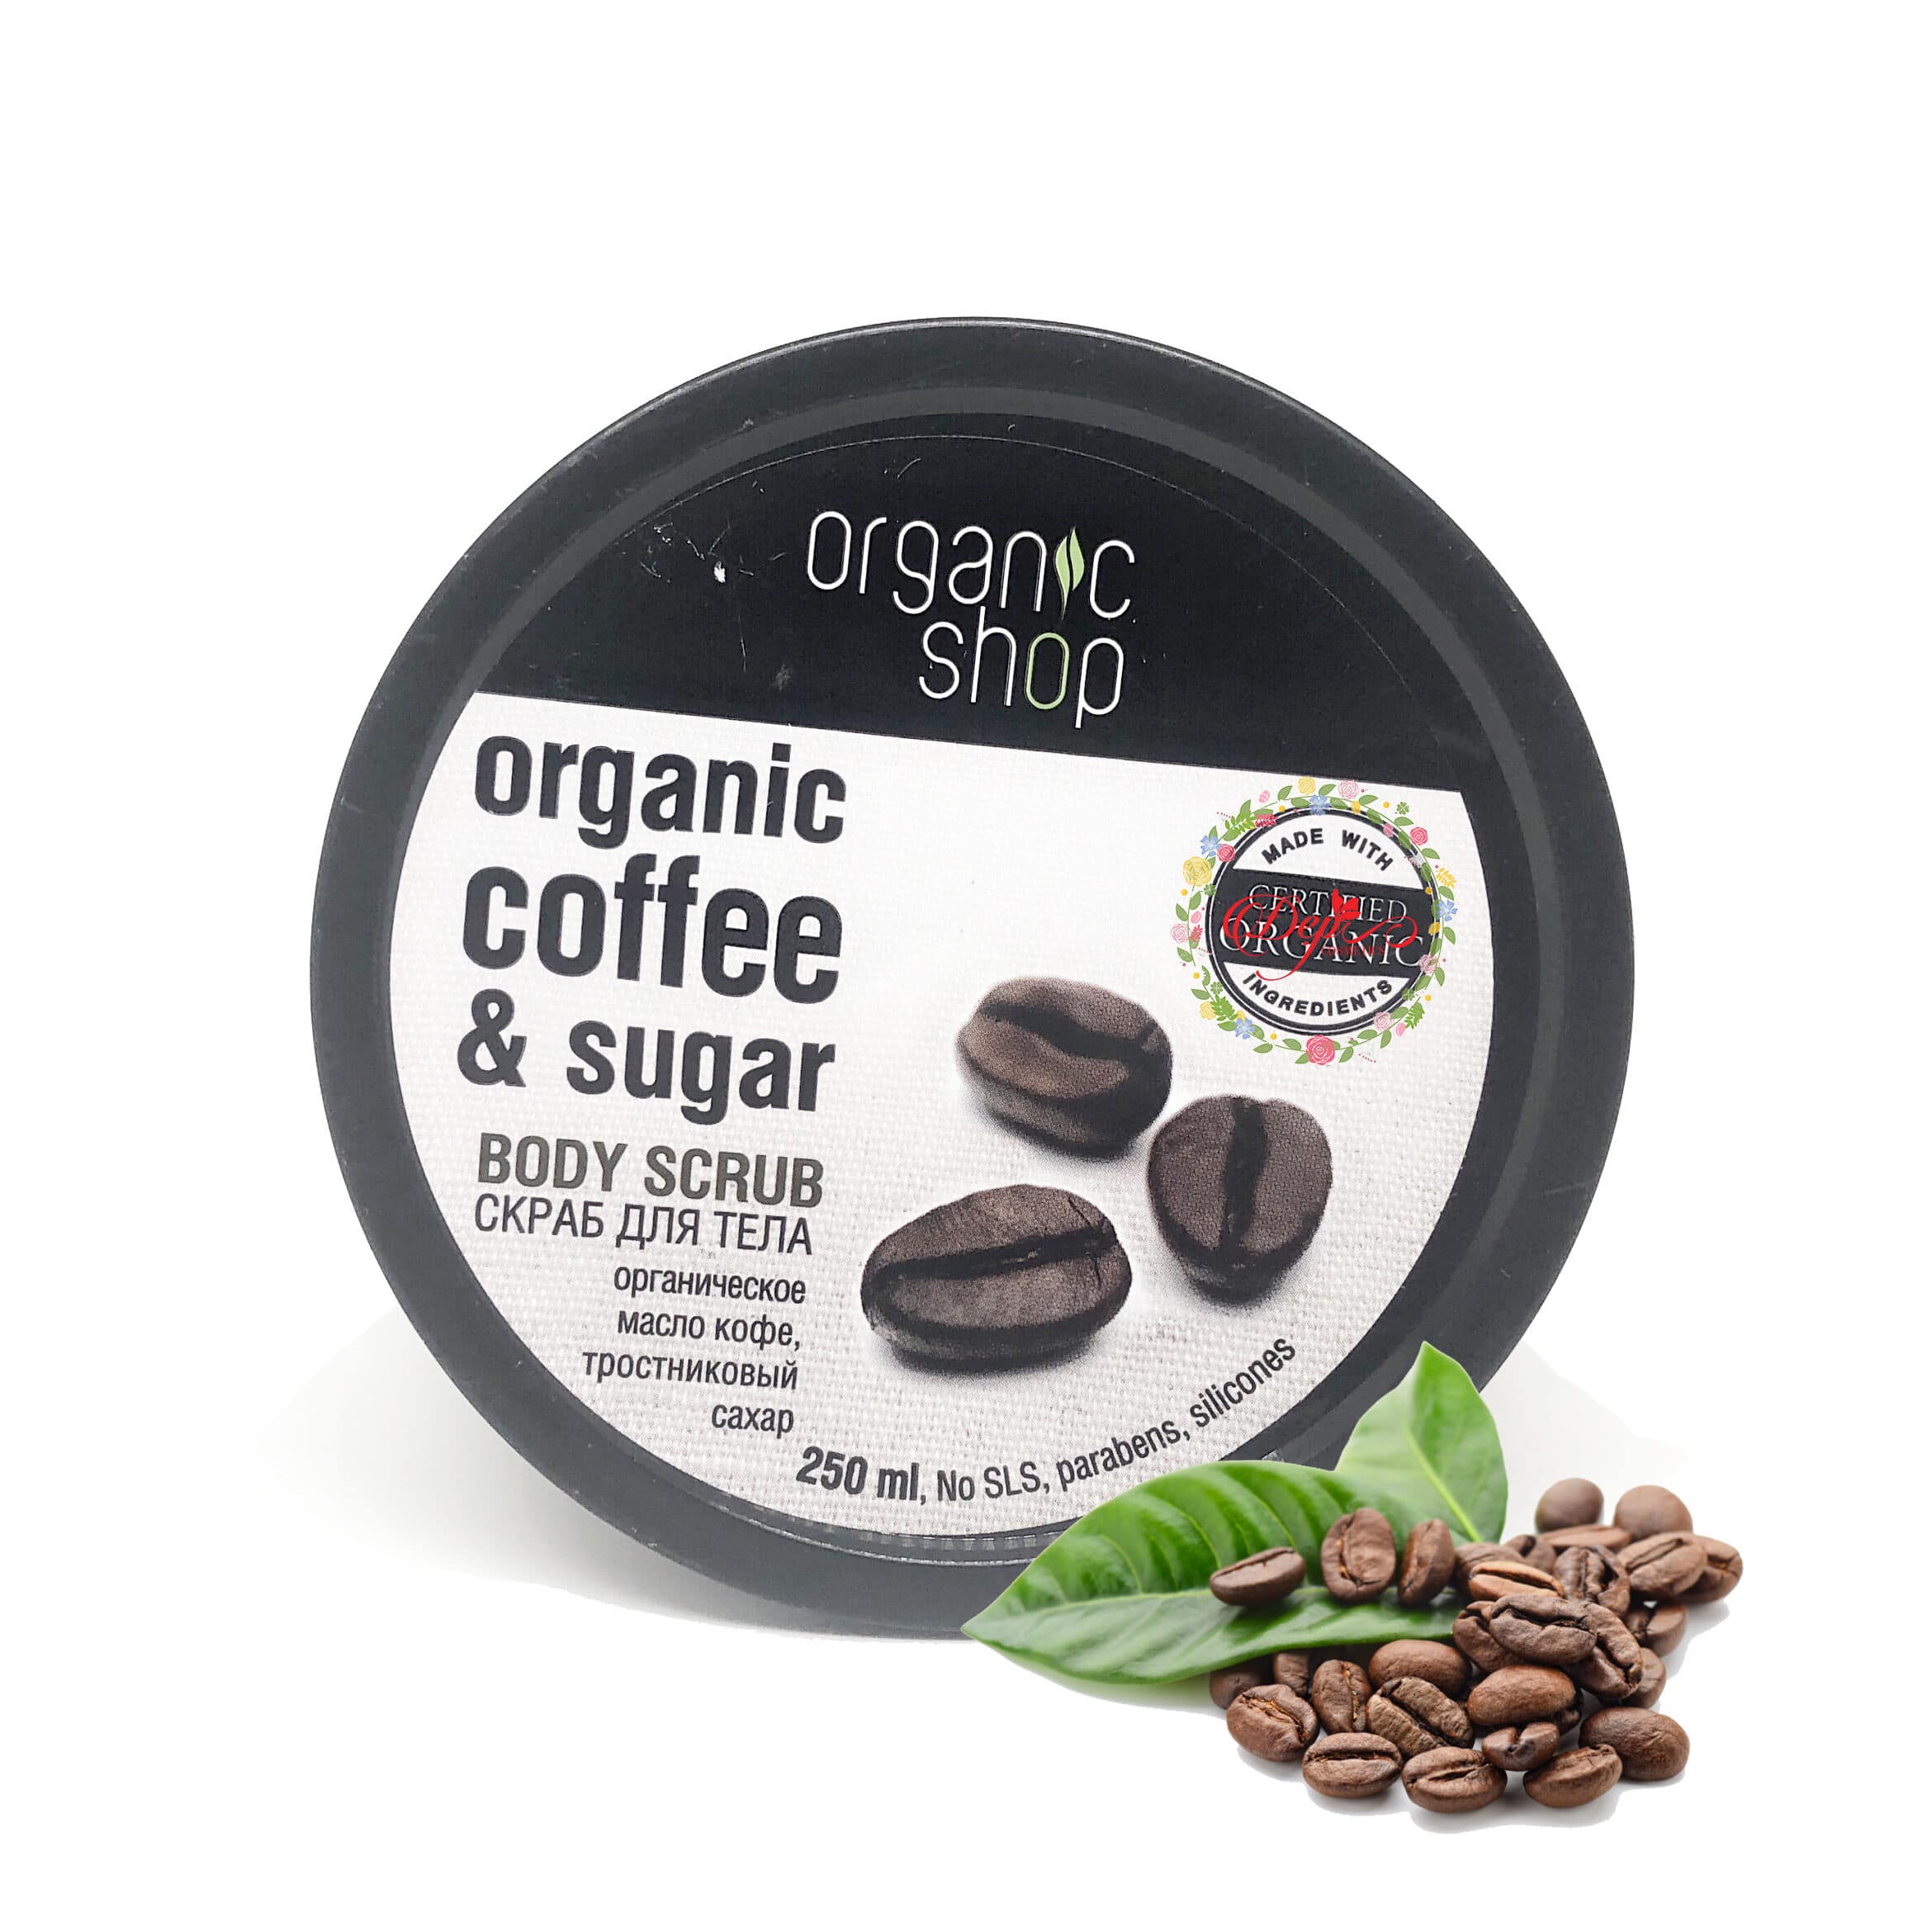 Organic Coffee And Sugar Body Scrub 250ml